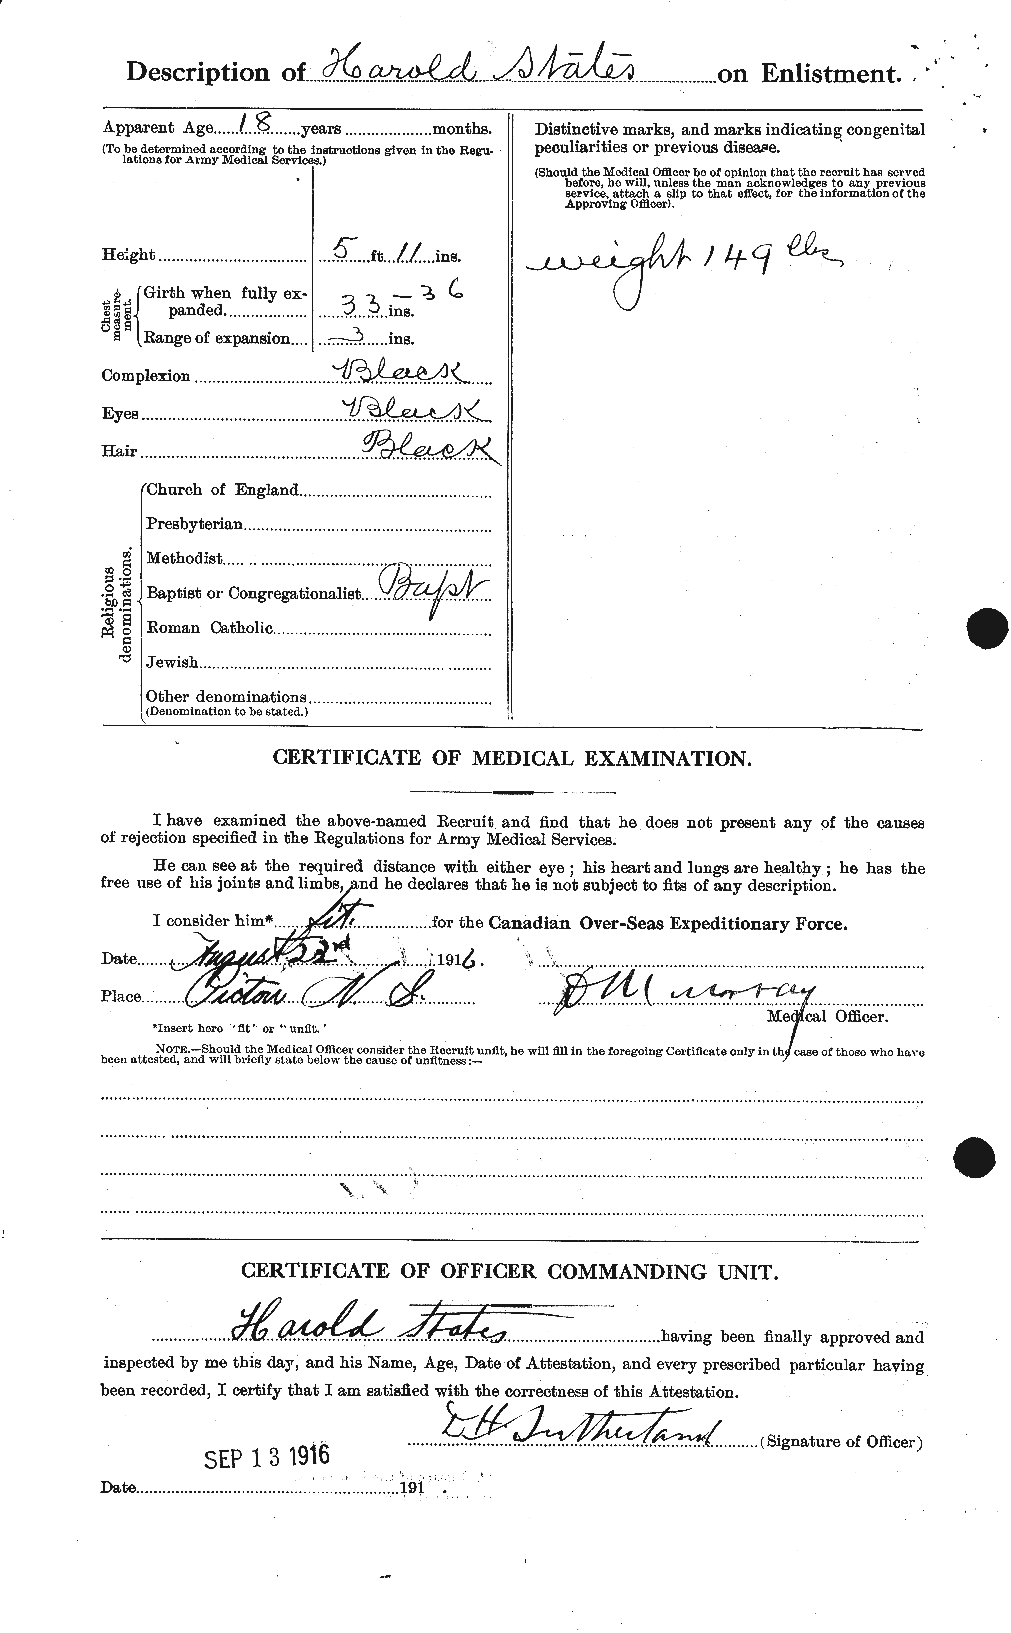 Dossiers du Personnel de la Première Guerre mondiale - CEC 116128b